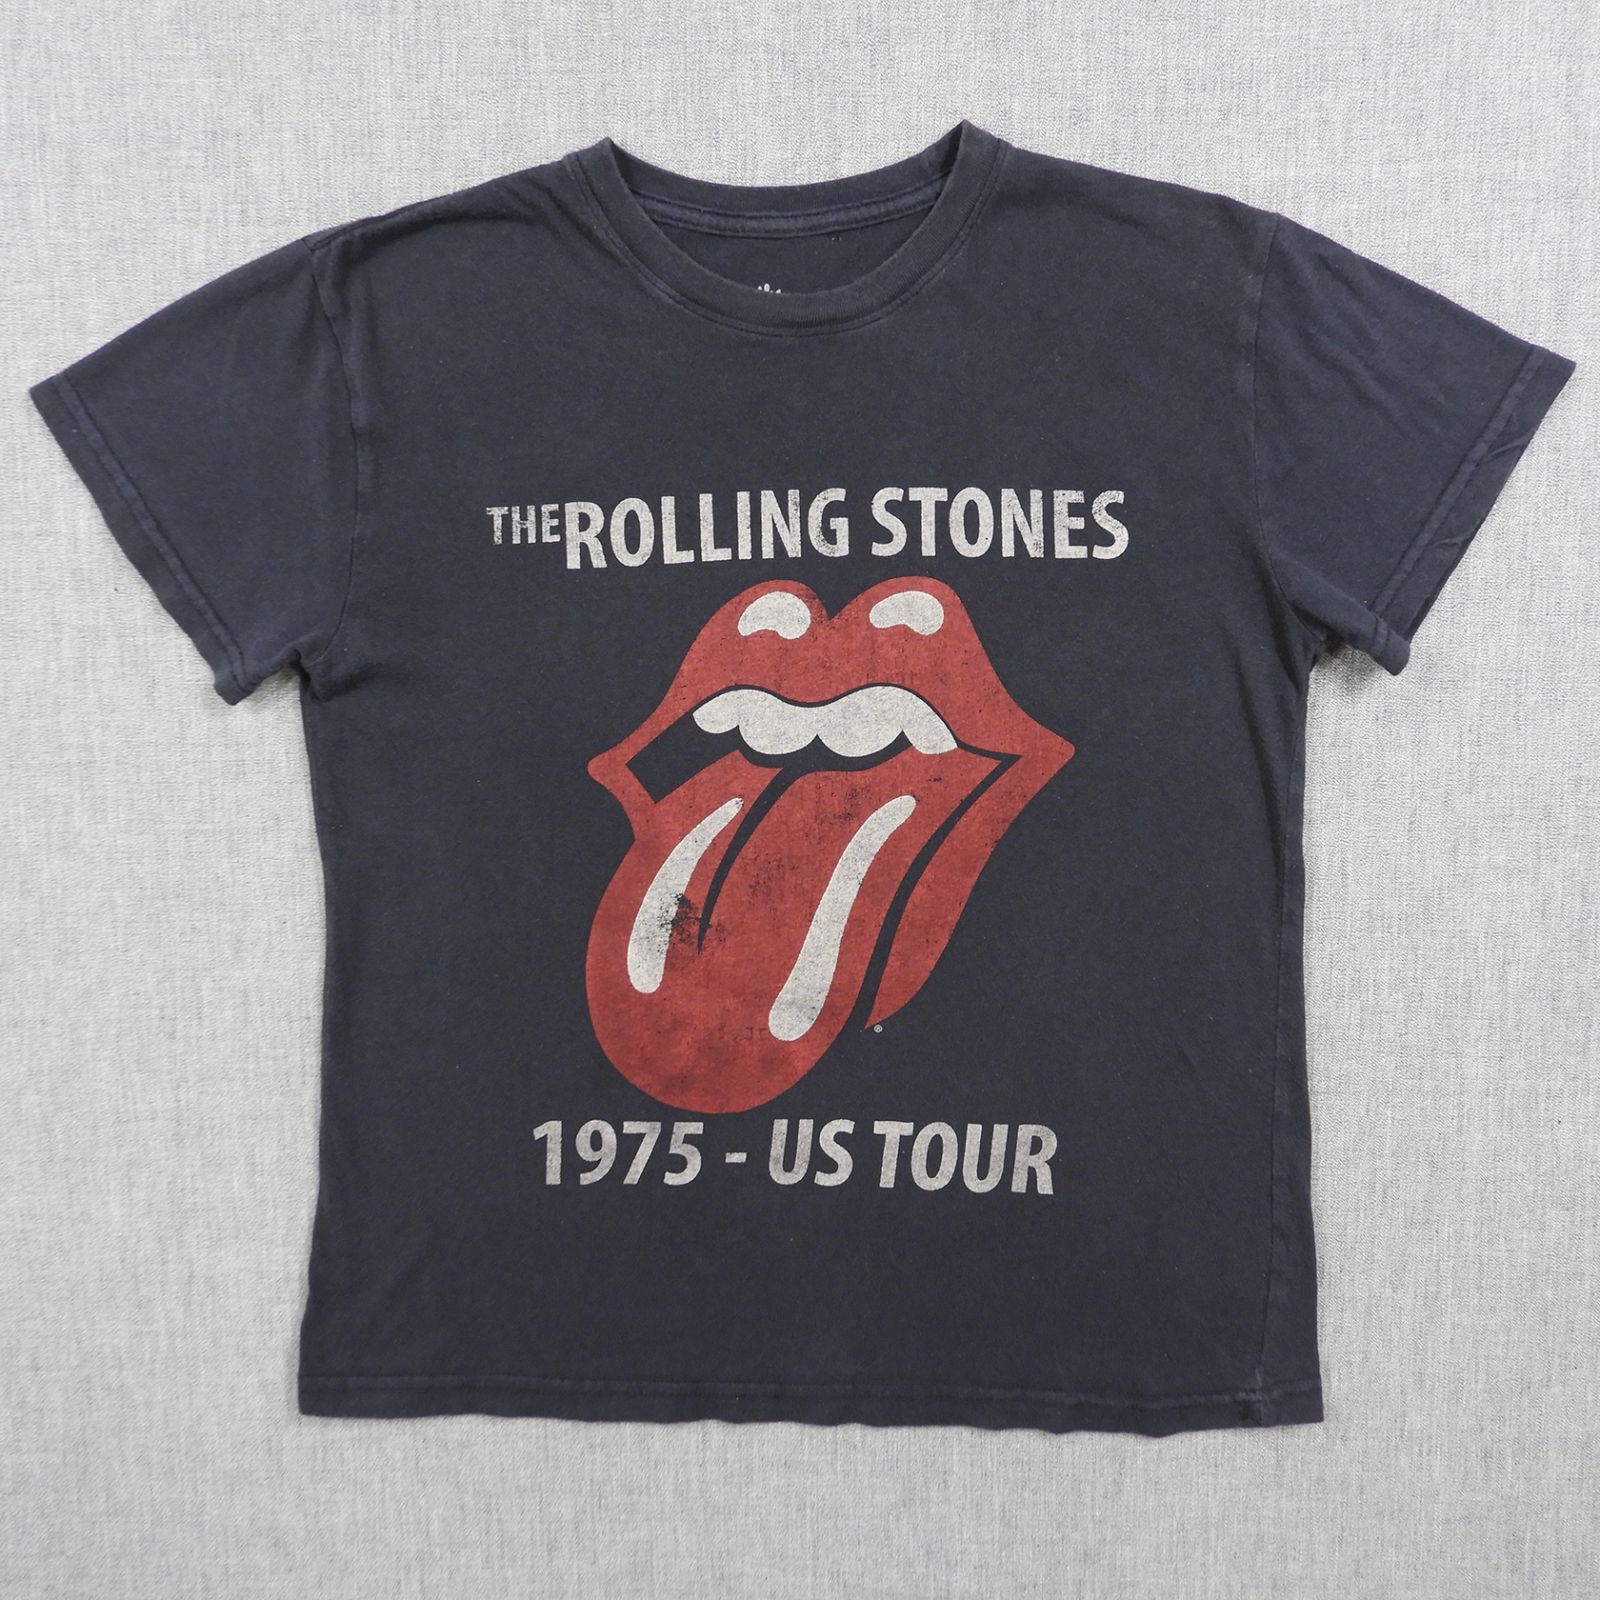 ローリングストーンズ 1975-US TOUR Tシャツ ブラック size S #1606 THE ROLLING STONES ロック バンド  アメカジ 古着 - メルカリ